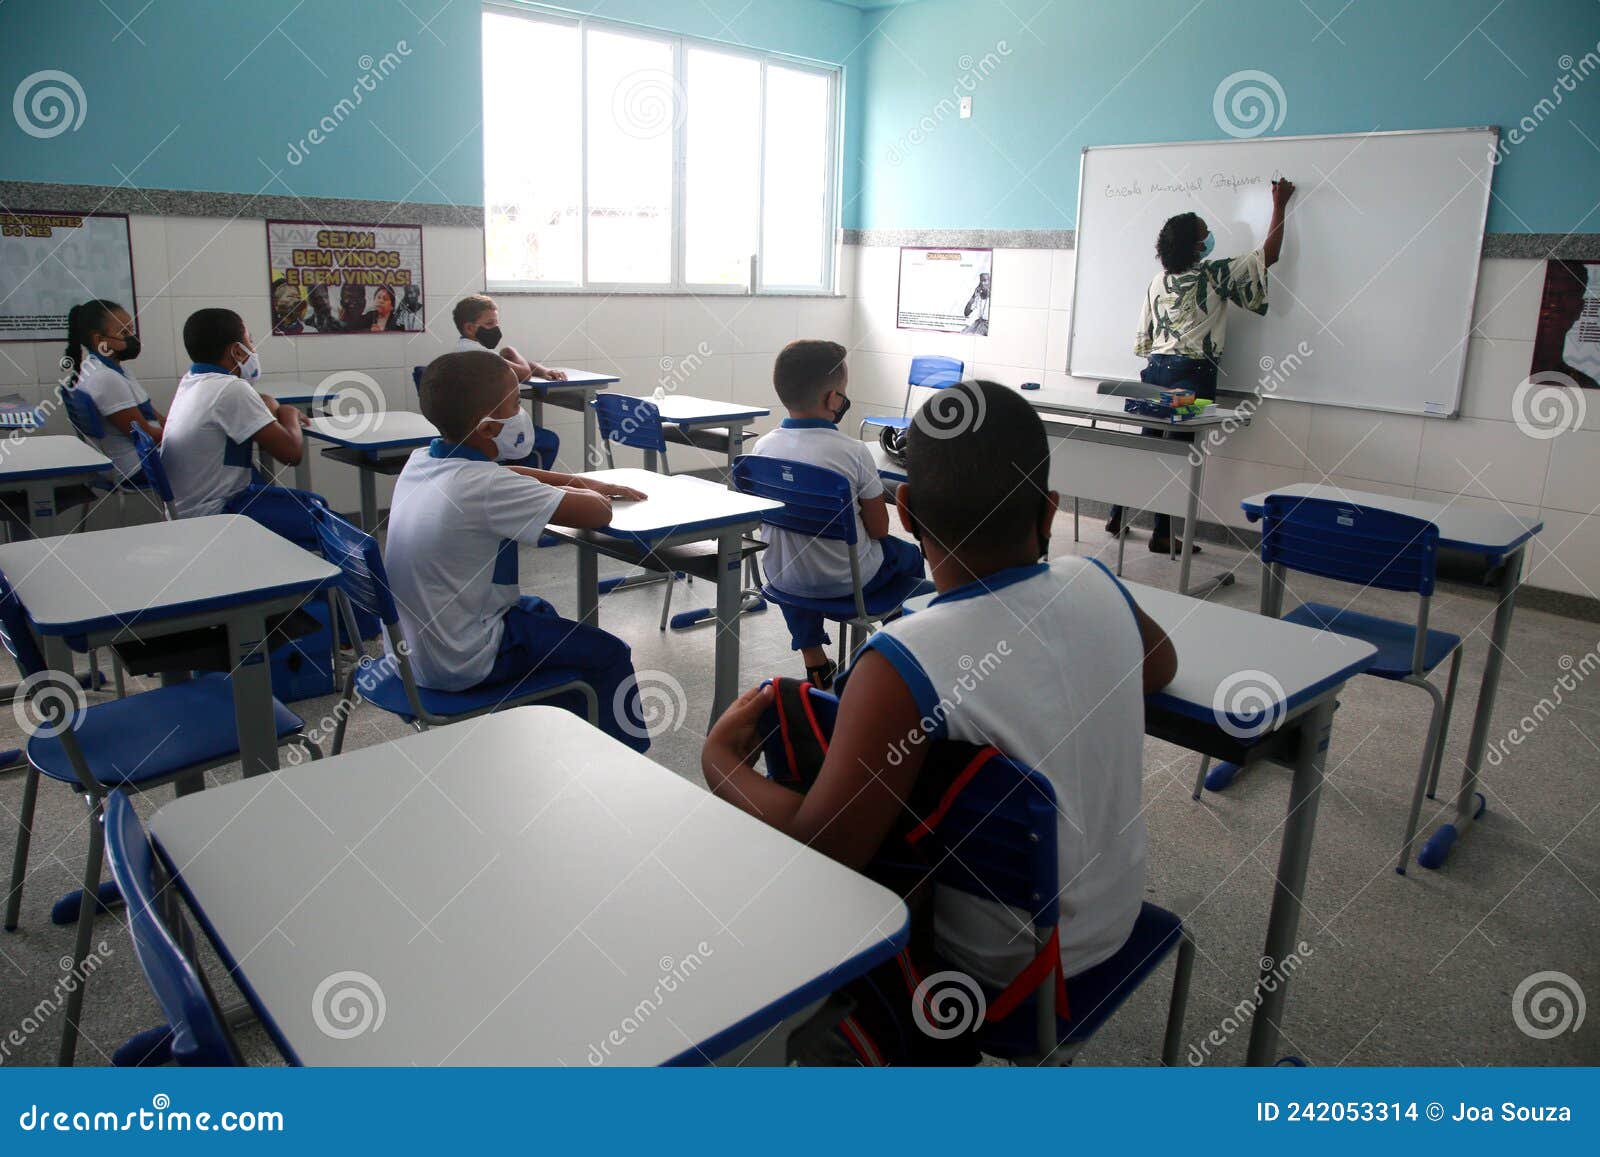 Aulas de uma das principais escolas públicas de Salvador são